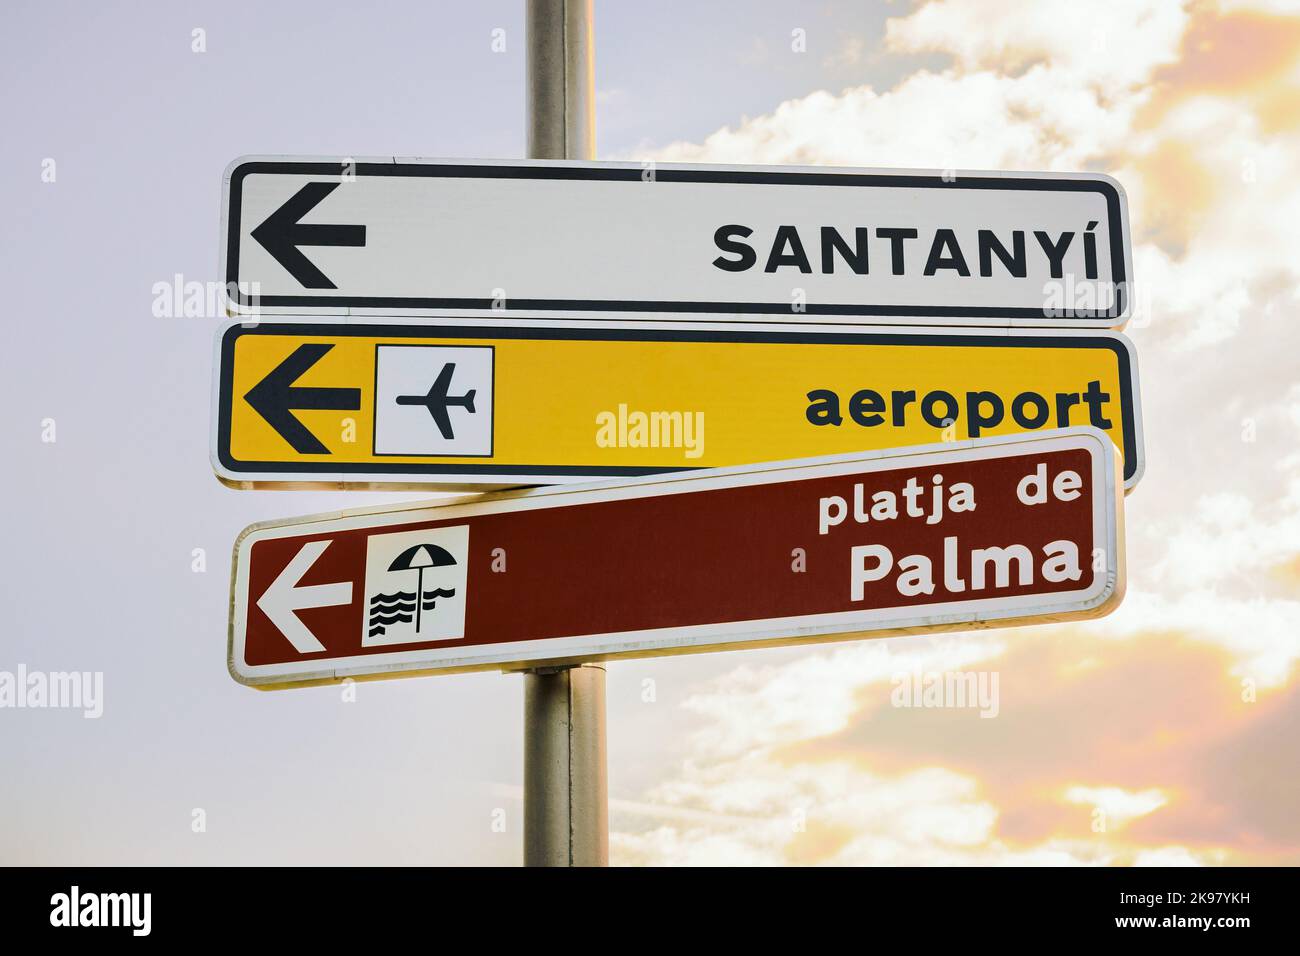 Panneau de rue à Palma de Majorque, Espagne Banque D'Images